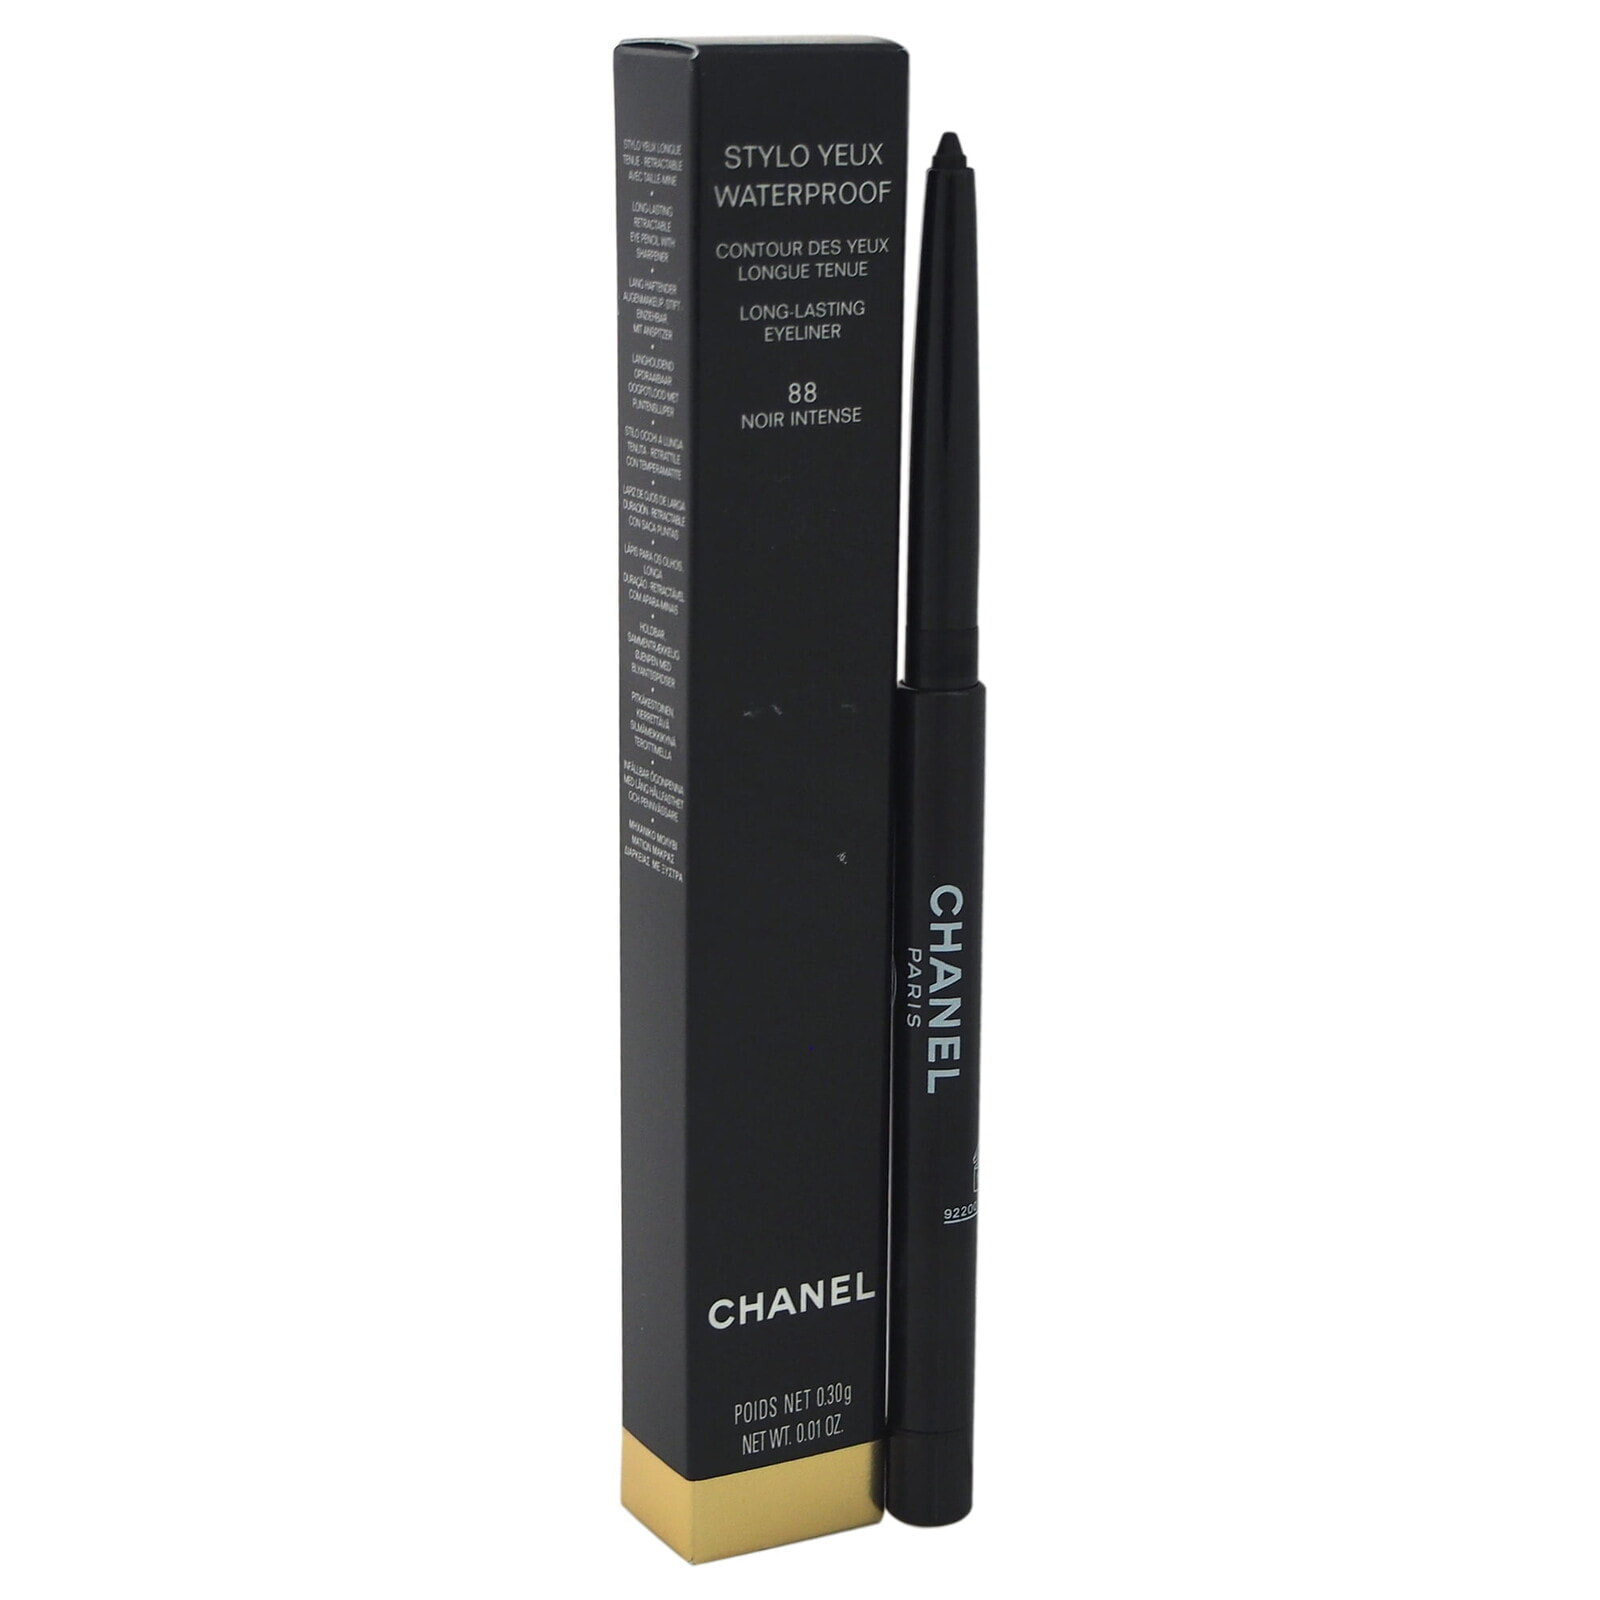 Chanel Stylo Yeux Waterproof Водостойкий карандаш для подводки внутреннего и внешнего века 0.3 г